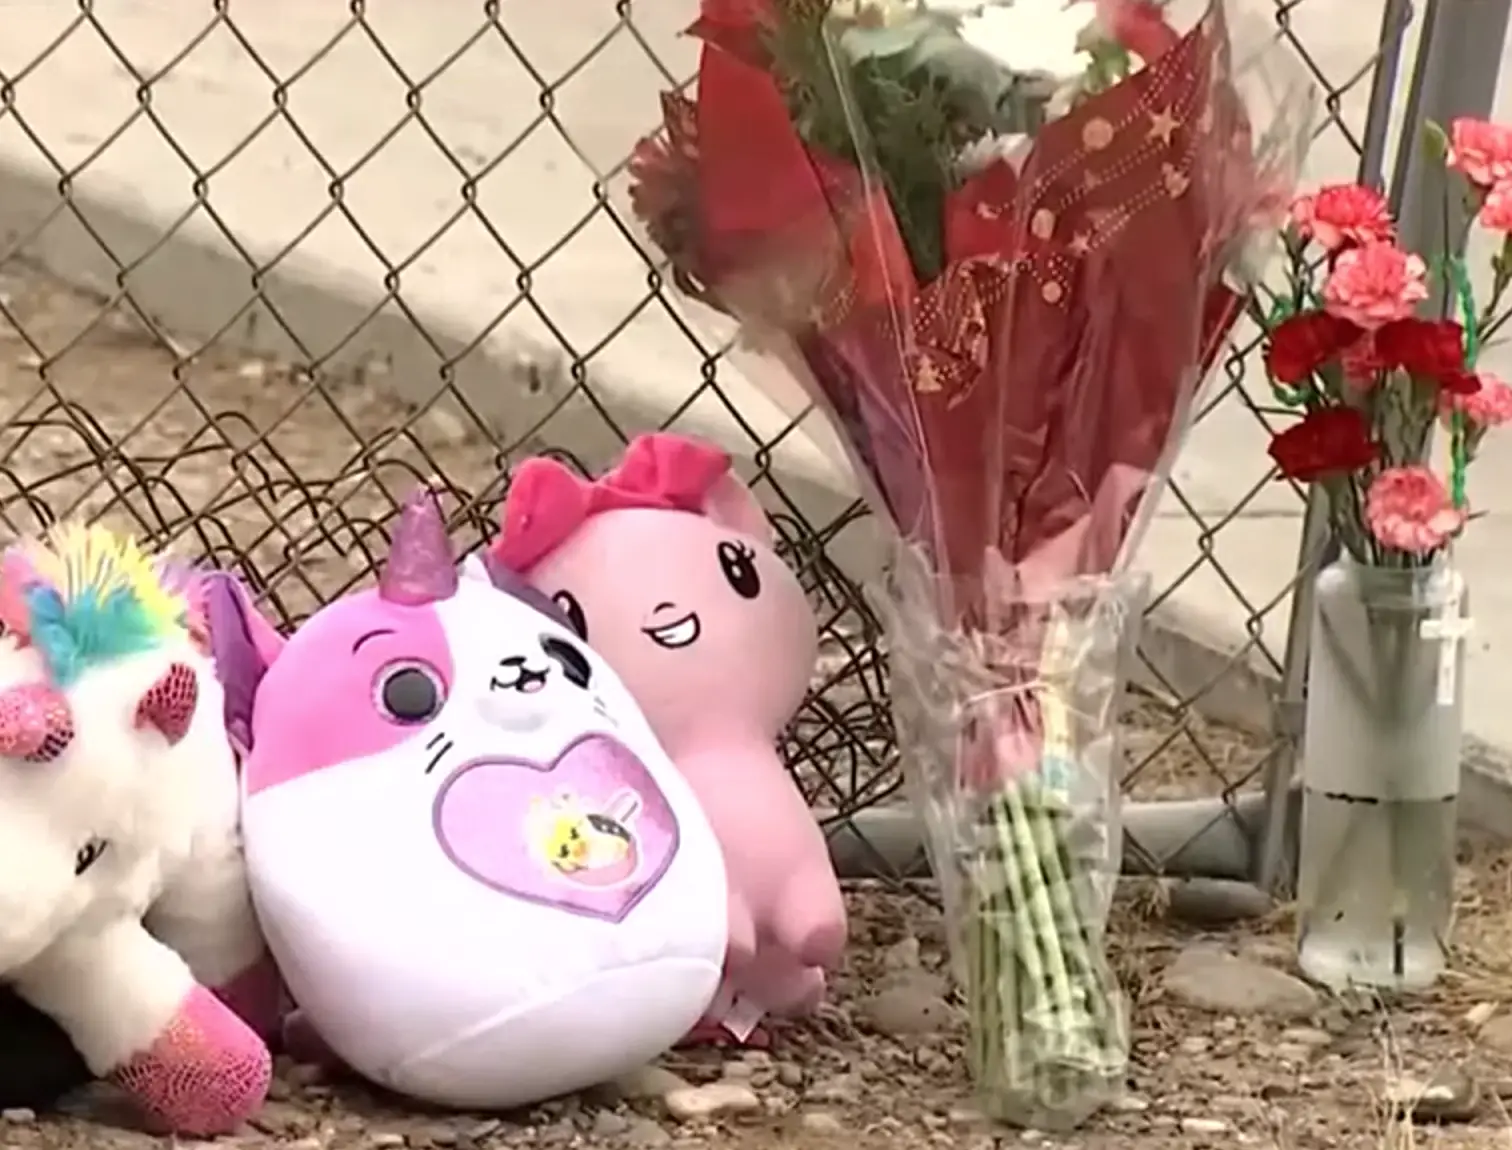 Des fleurs et des animaux en peluche autour de la maison qui a pris feu et tué cinq enfants | Source : Youtube.com/AZFamily | Arizona News